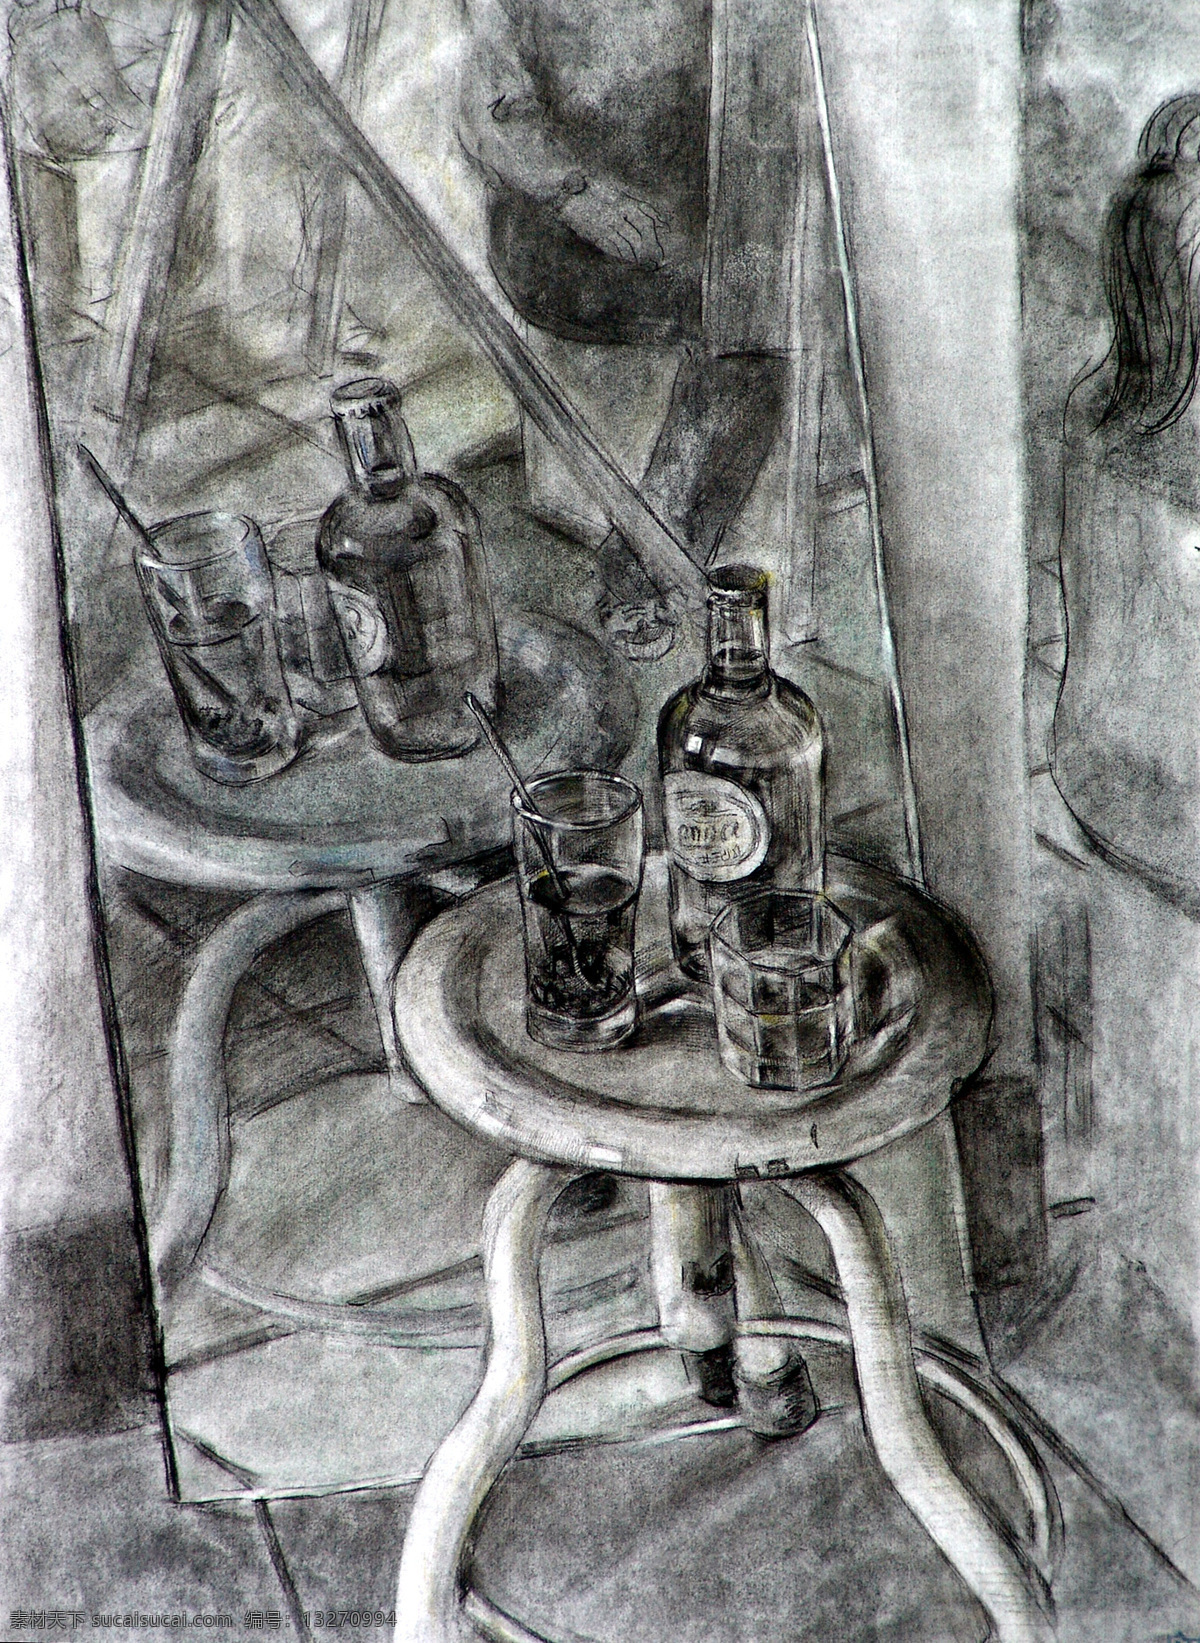 静物素描 酒瓶 酒杯 静物 素描 设计素材 静物专辑 素描速写 书画美术 灰色